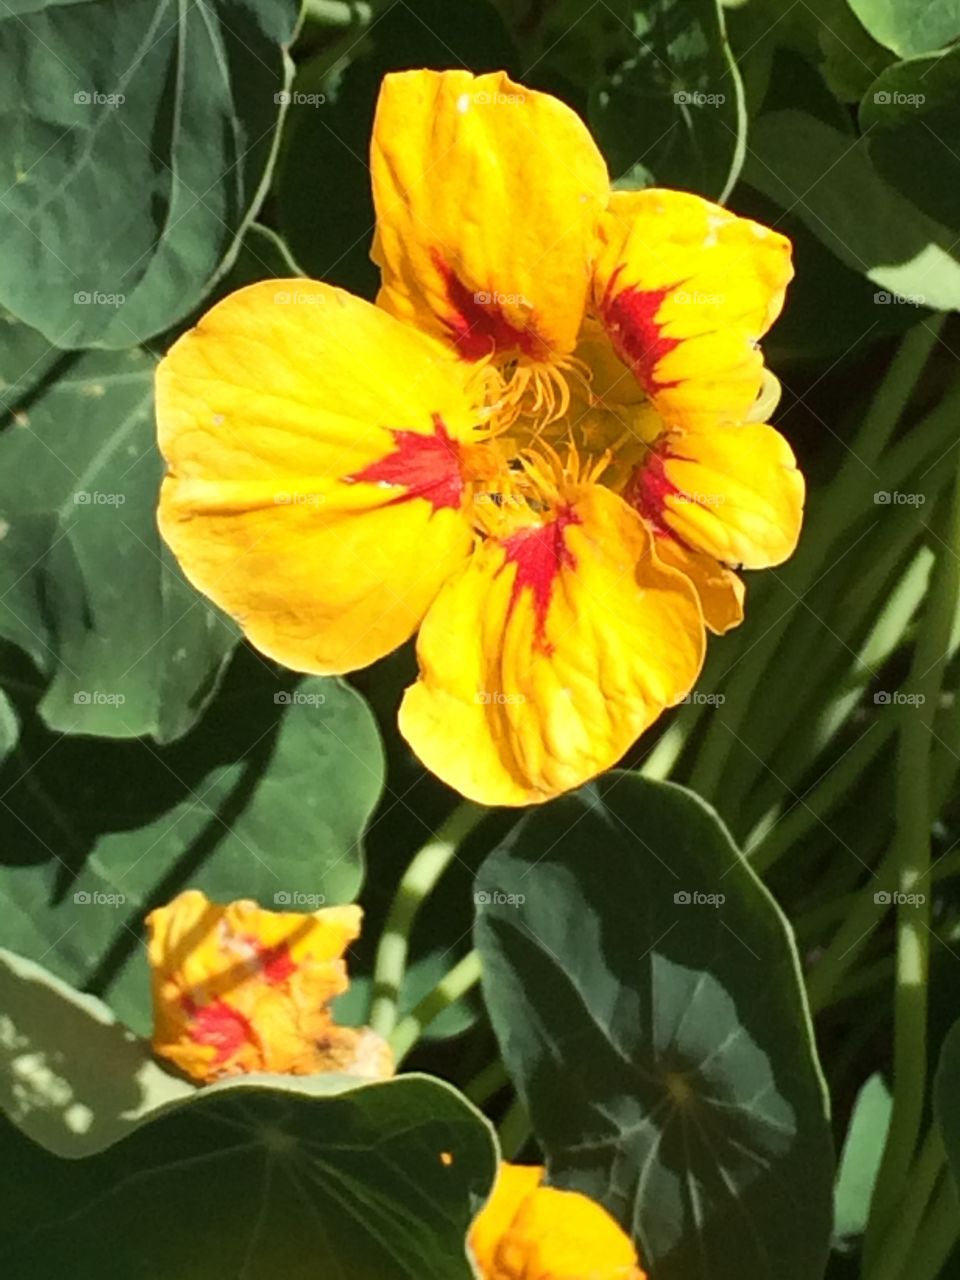 Beautiful flower in my garden 